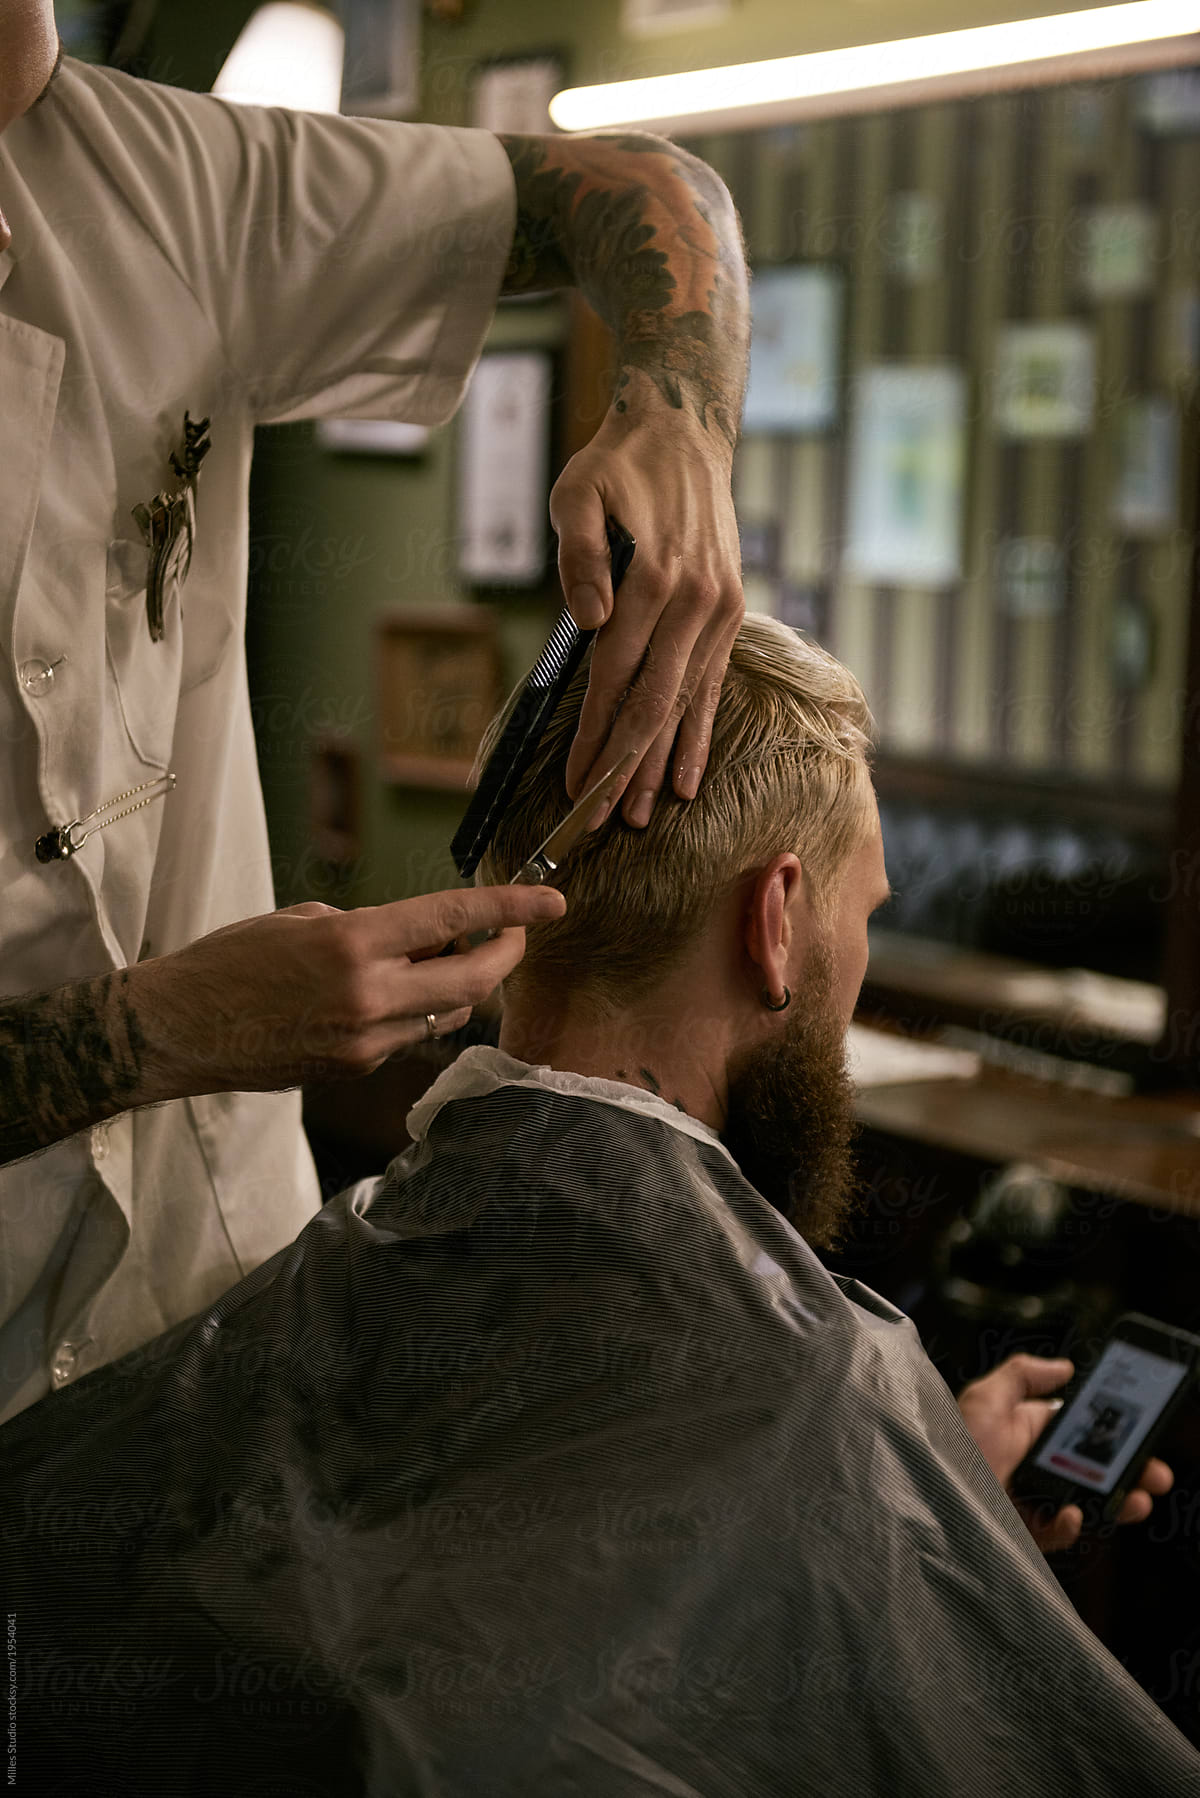 Man grooming client in barbershop